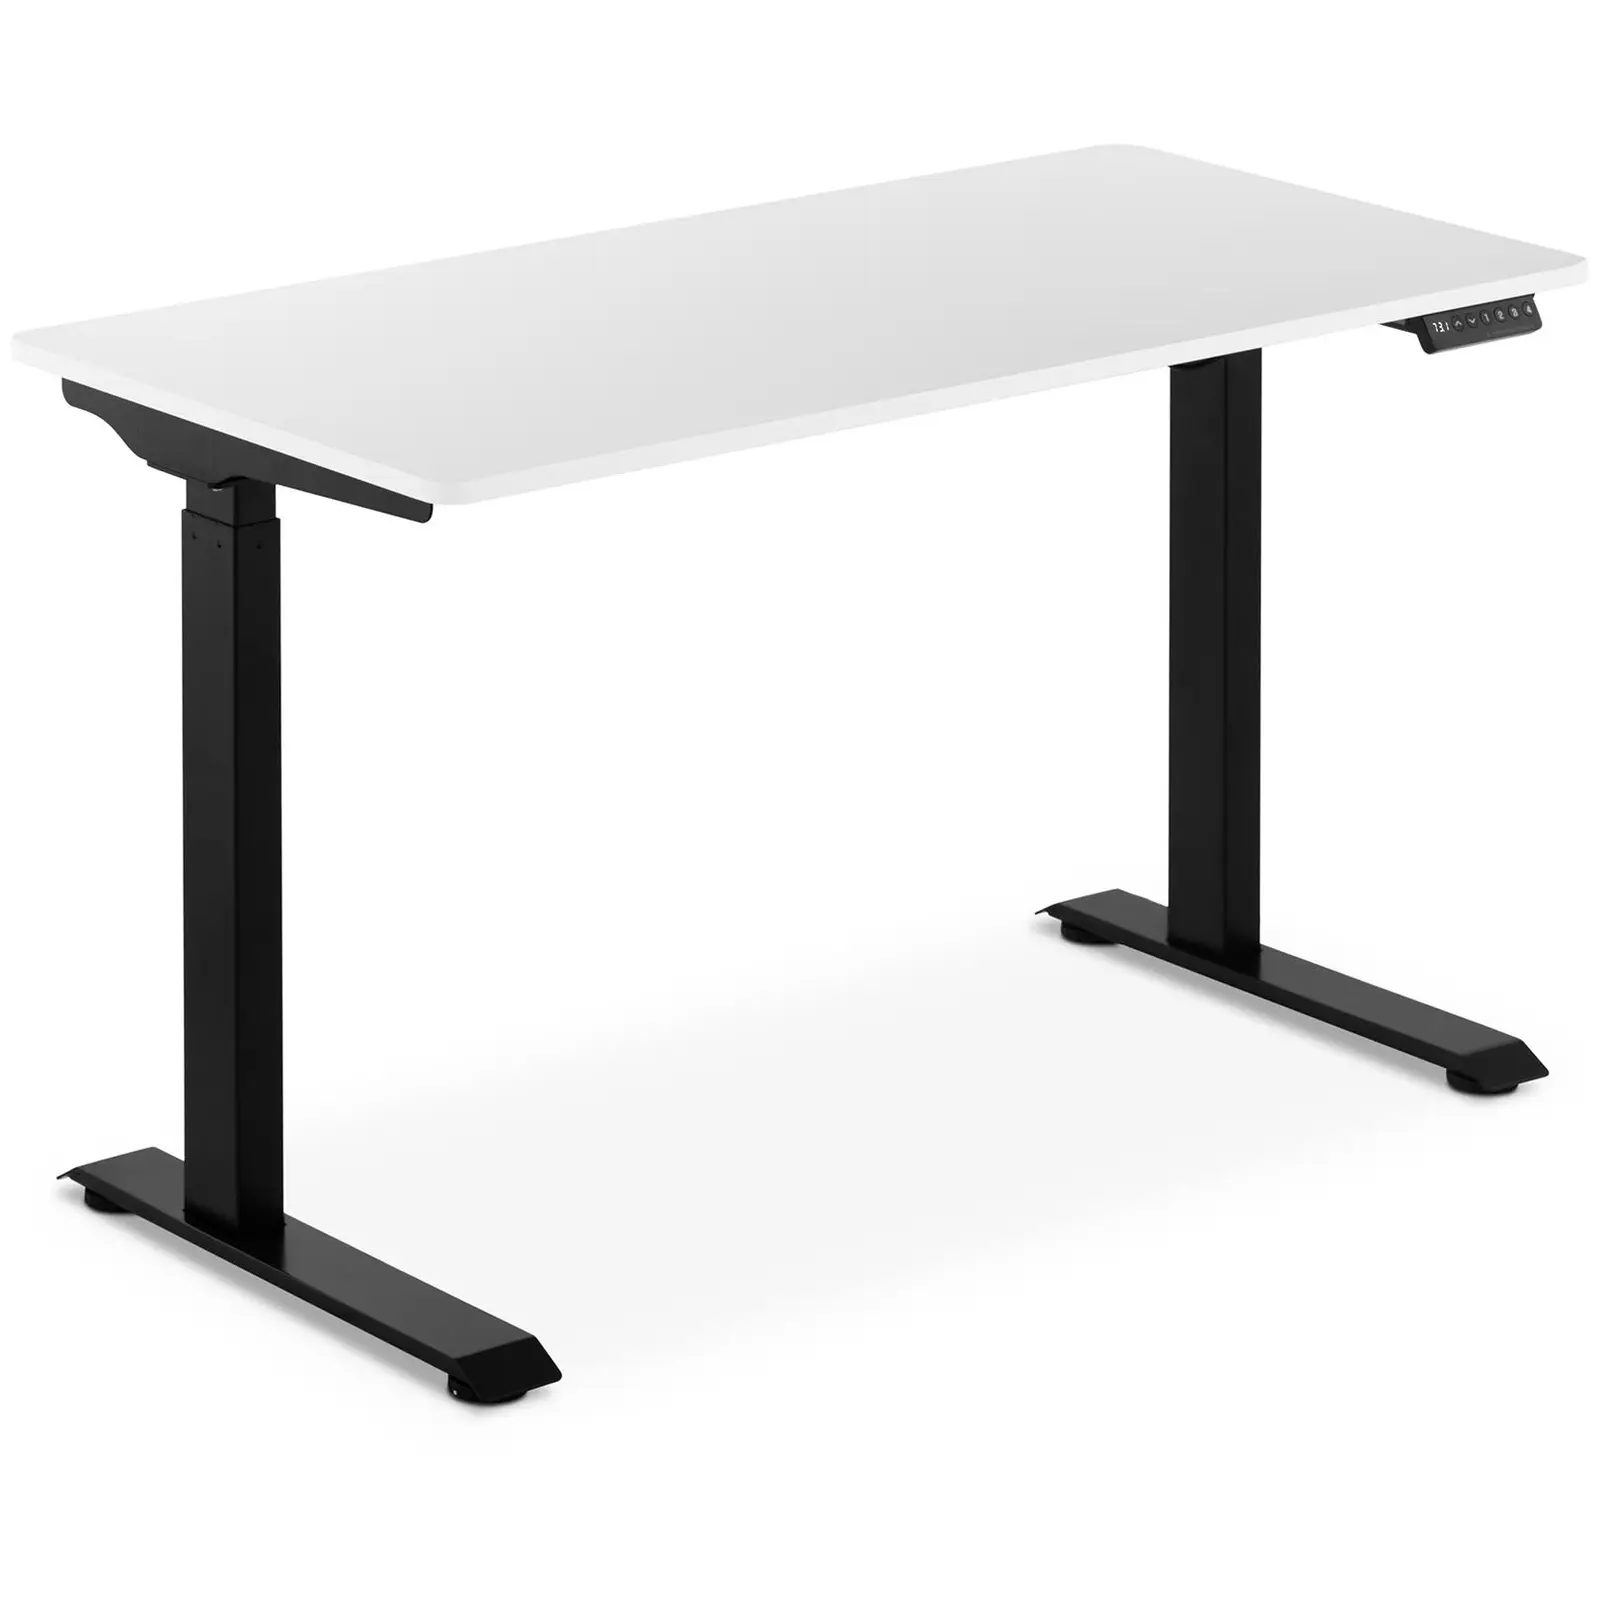 Höj- och sänkbart skrivbord - 90 W - 730-1233 mm - Vit/svart